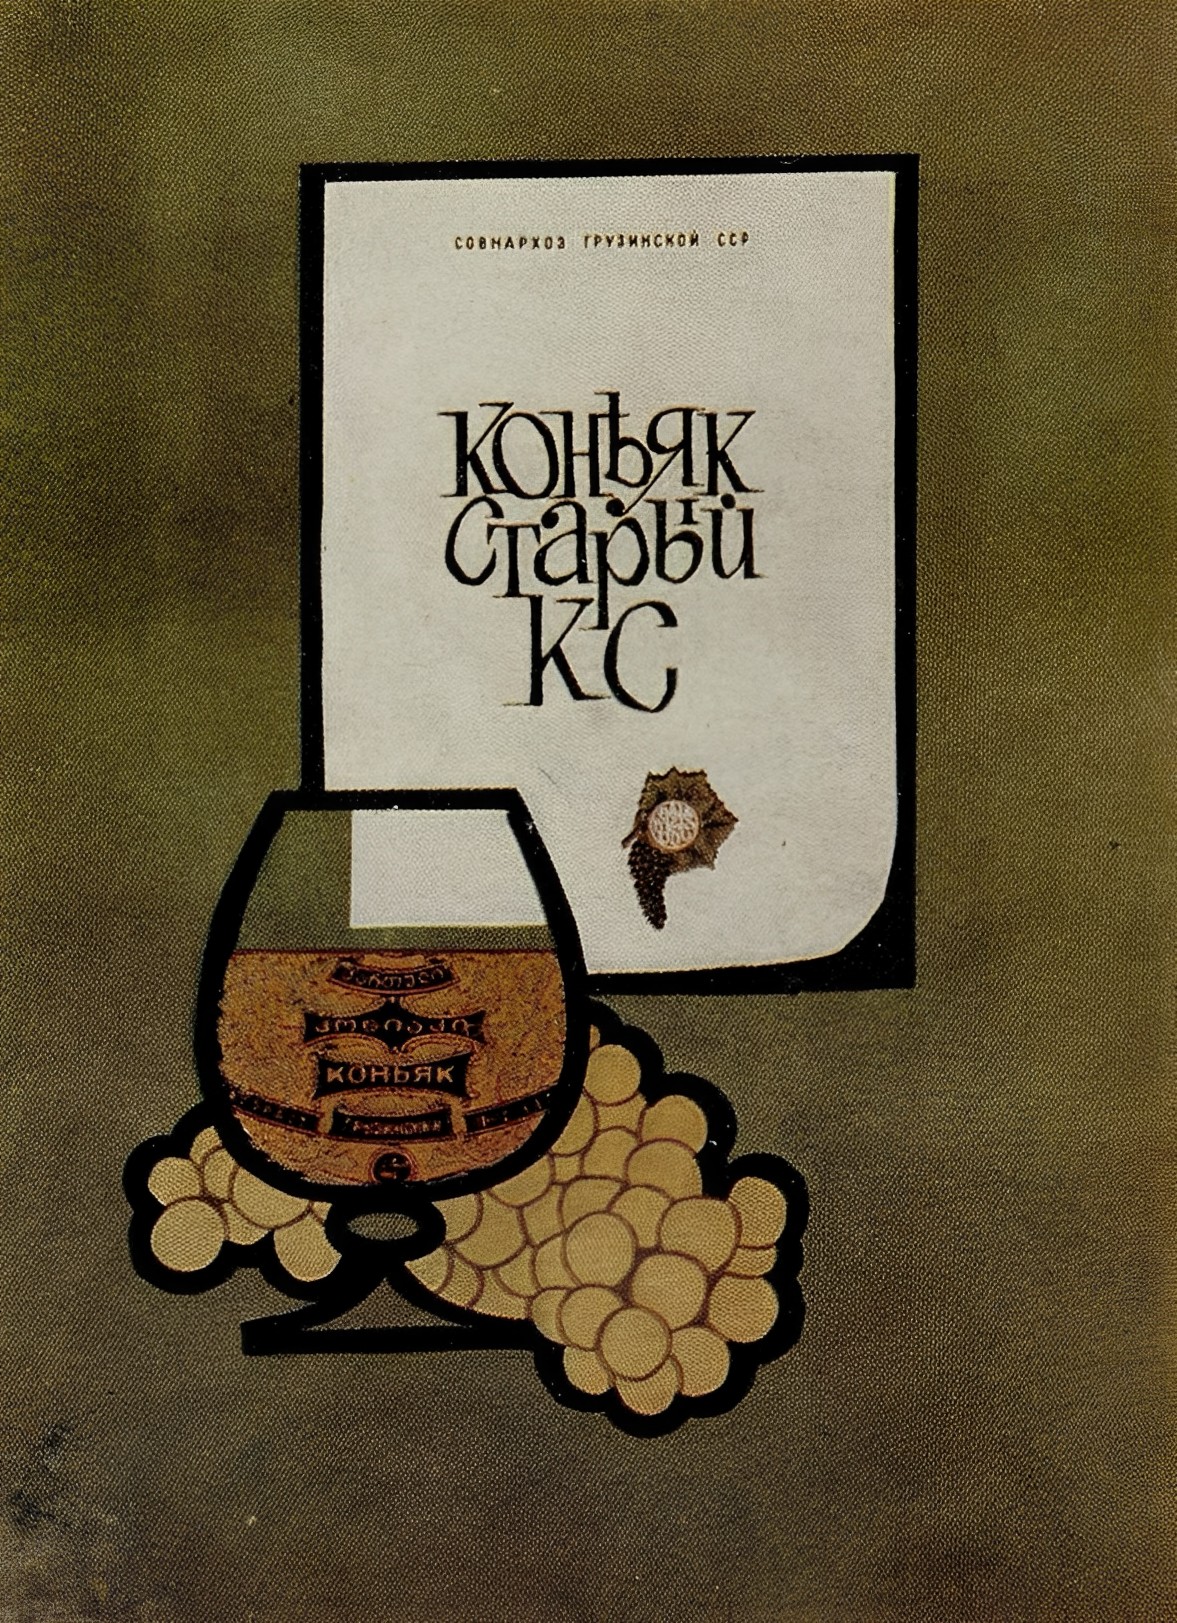 Рекламные листы грузинских вин и коньяков Автор — художник Р. Кондахсазов.